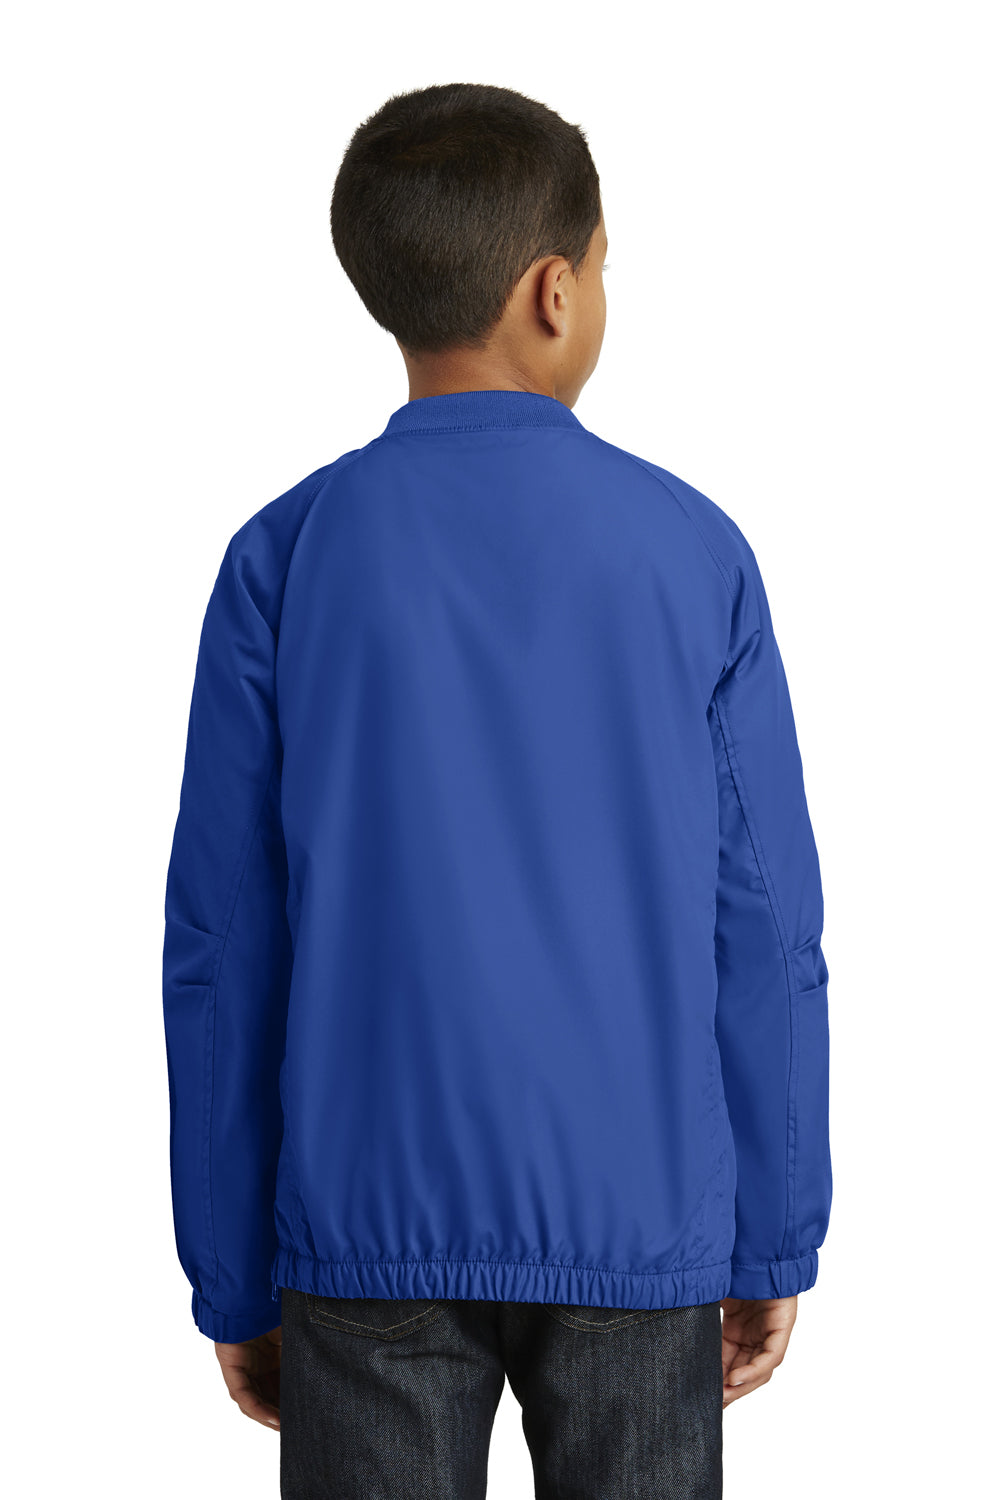 Sport-Tek YST72 Youth Water Resistant V-Neck Wind Jacket Royal Blue Back